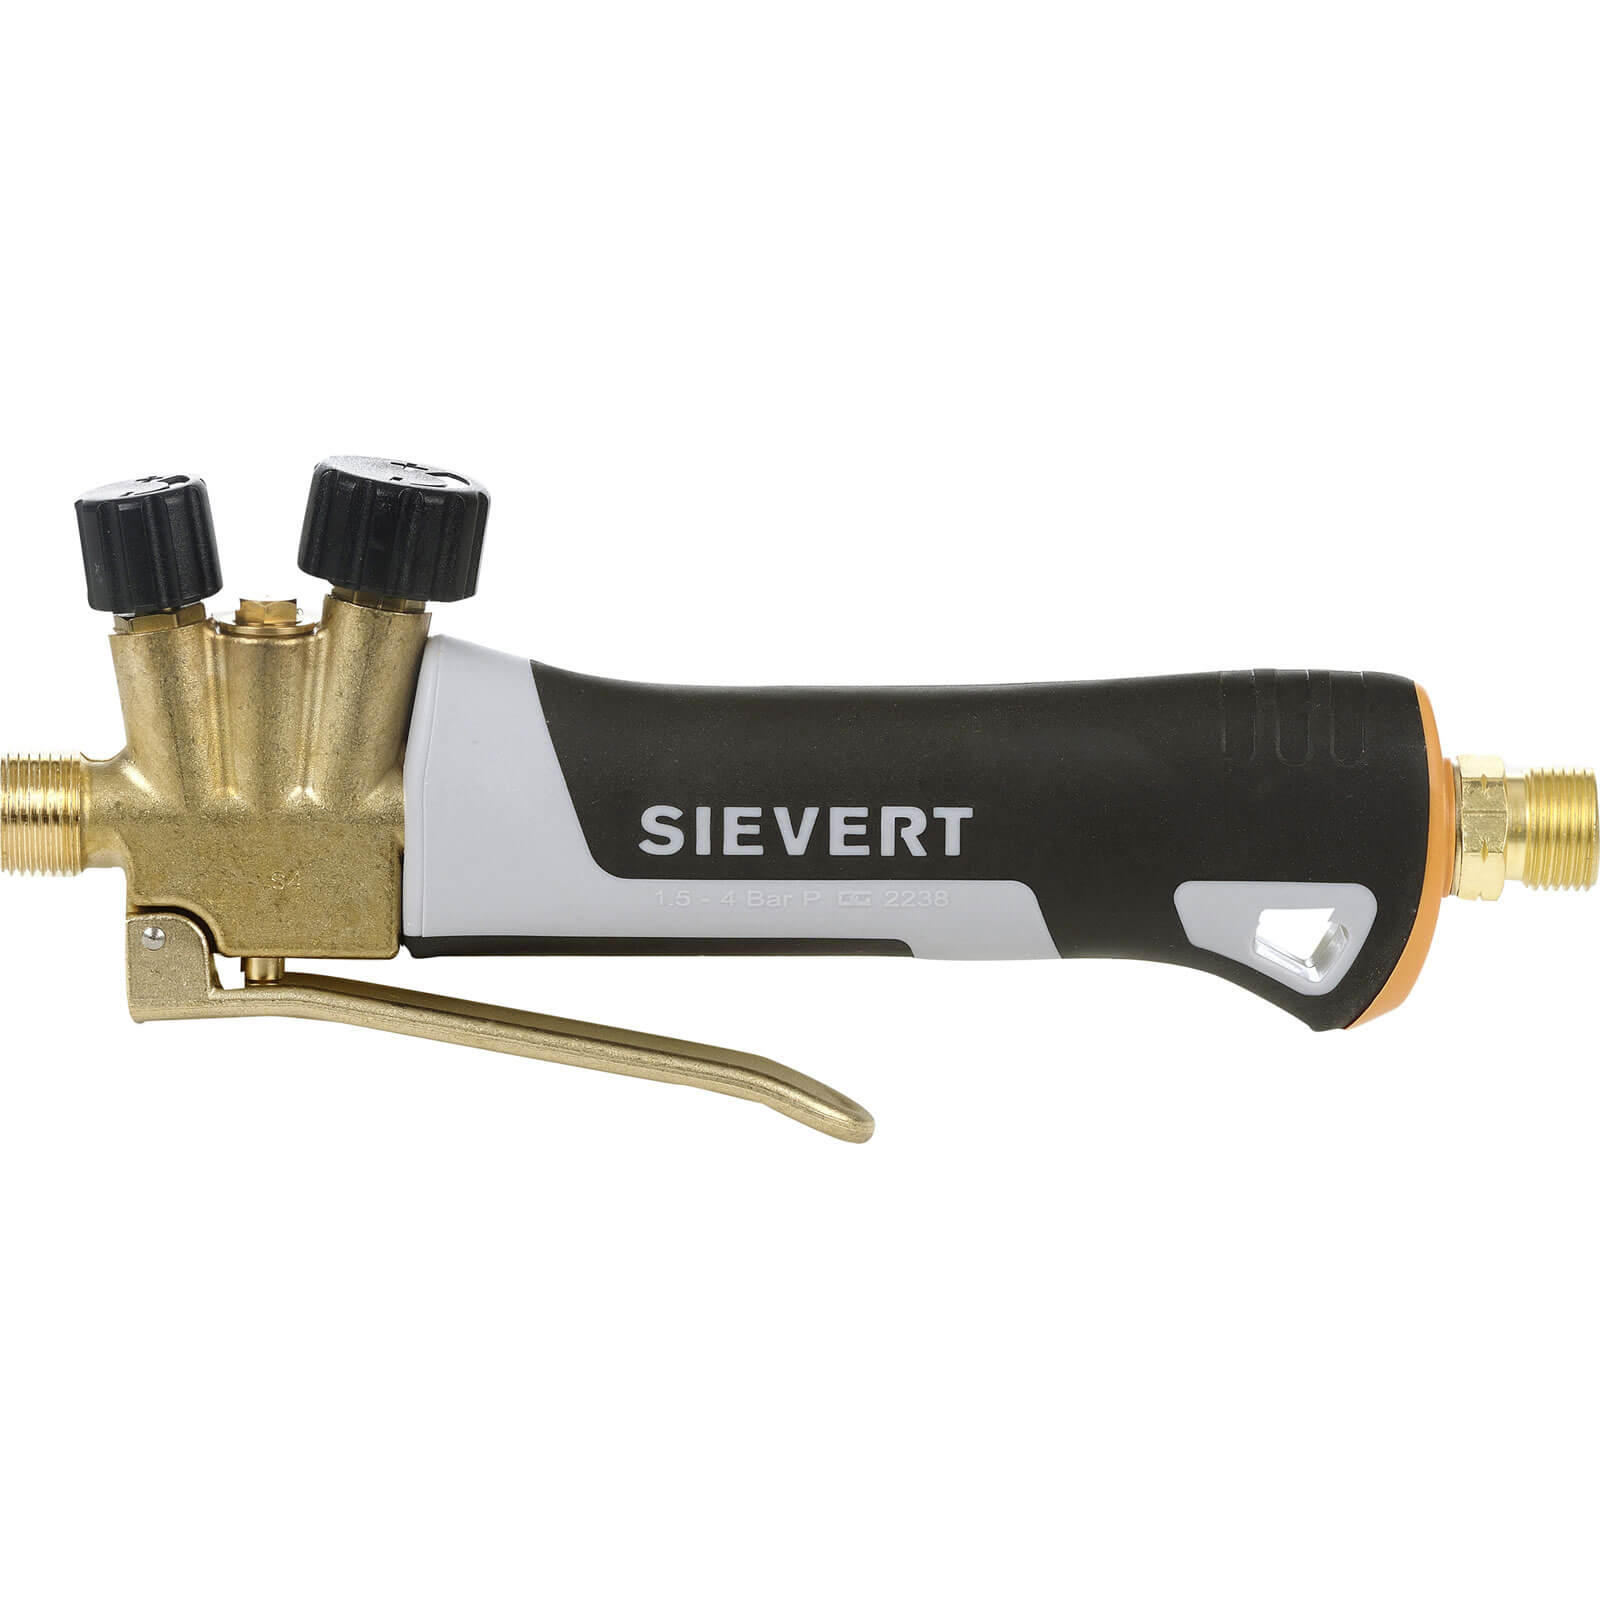 Sievert Pro 88 Torch Handle S3488